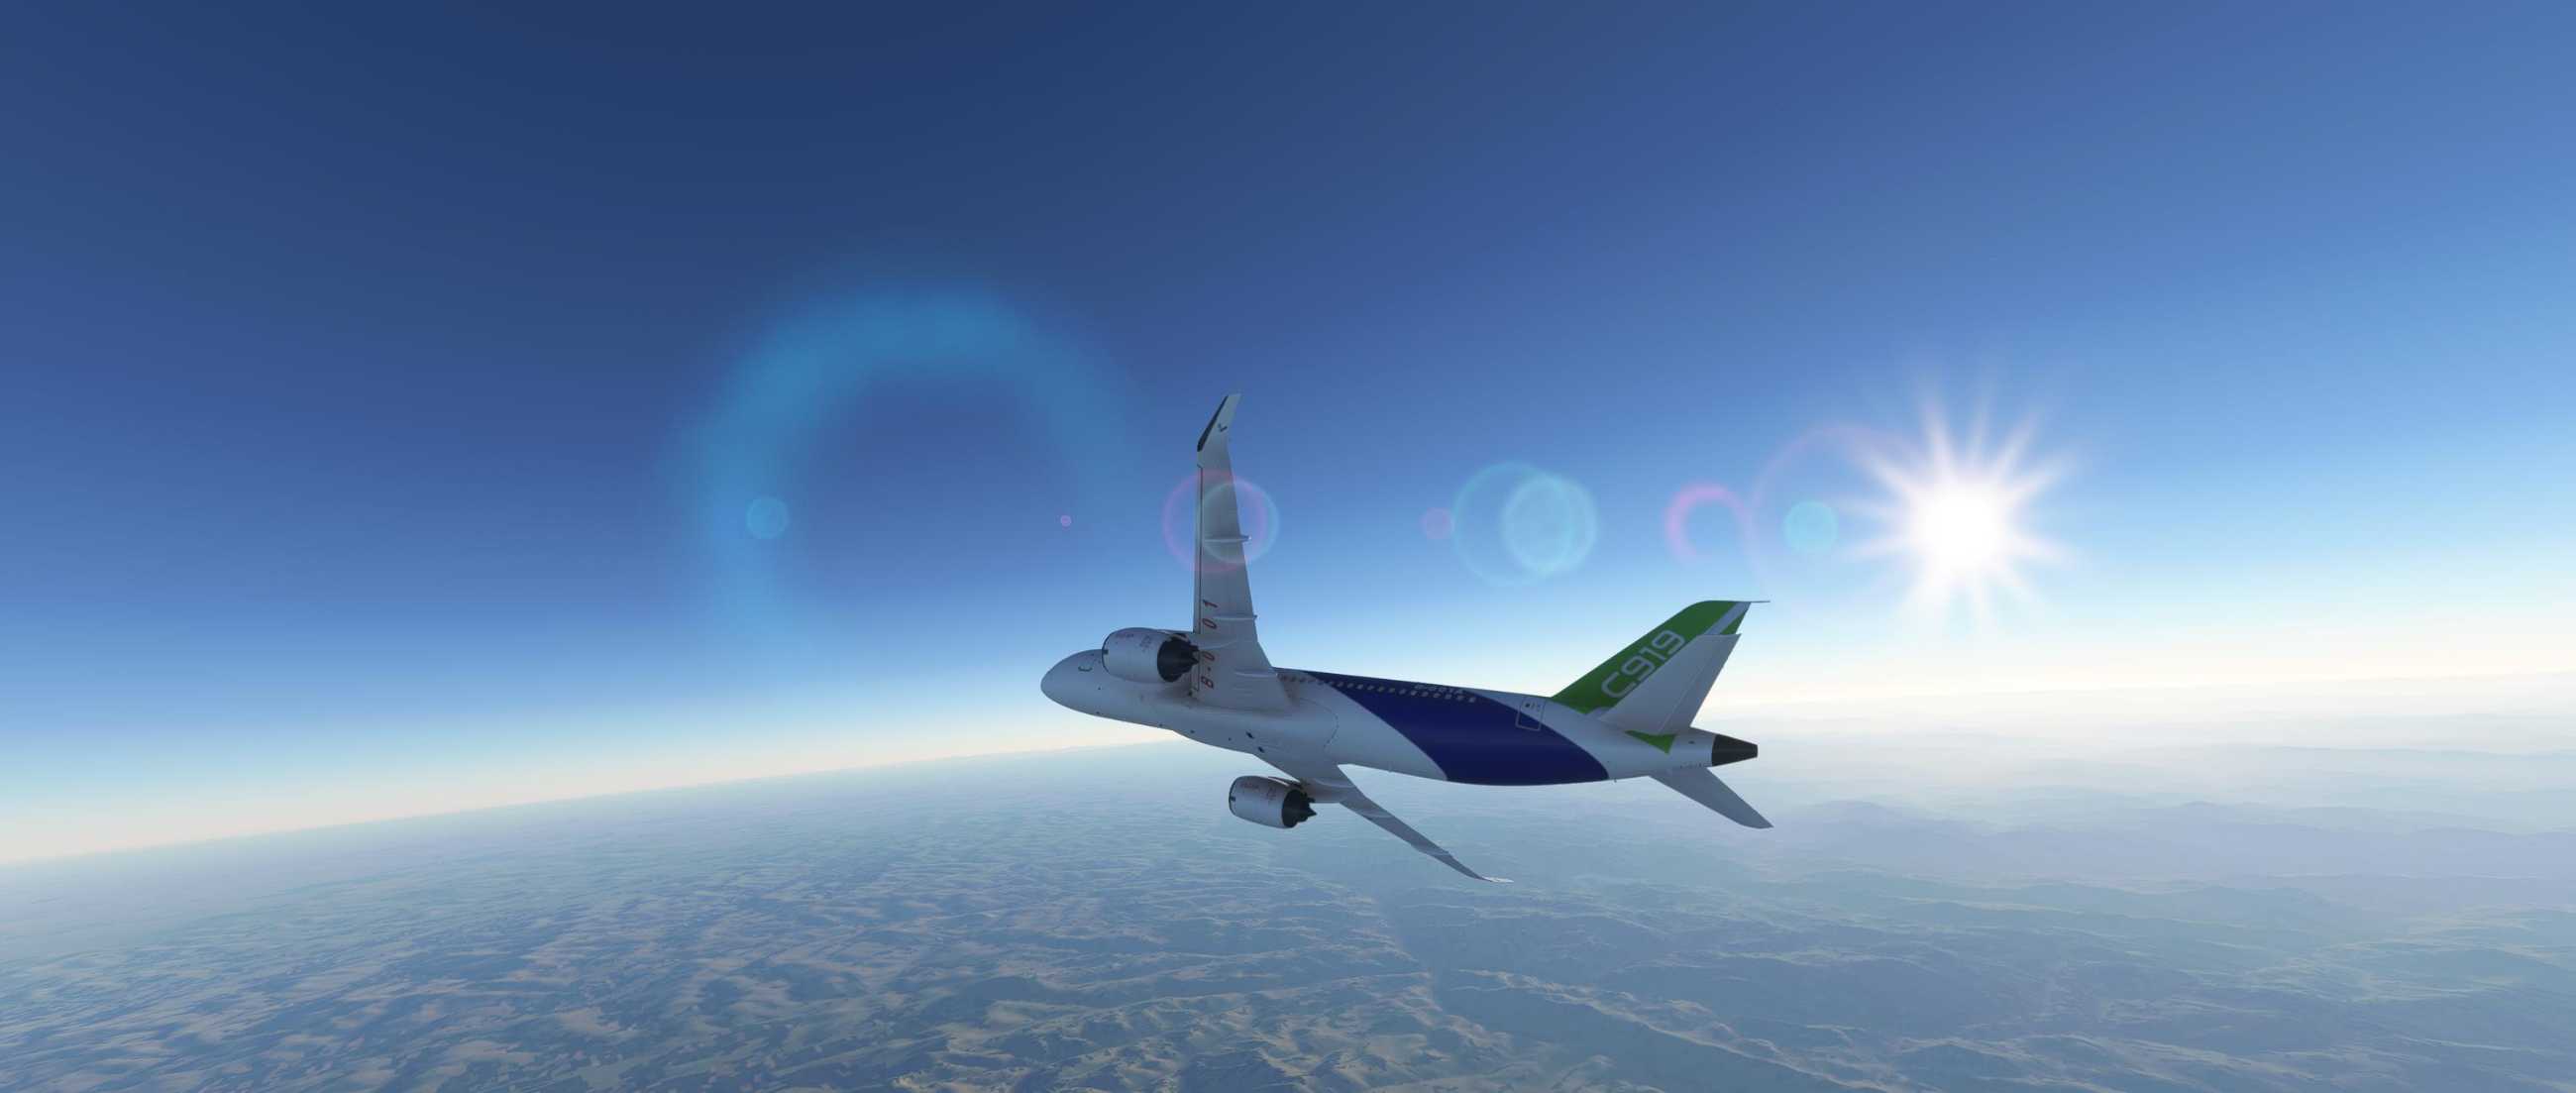 FYCYC-C919 国产大飞机机模 微软模拟飞行演示-5211 